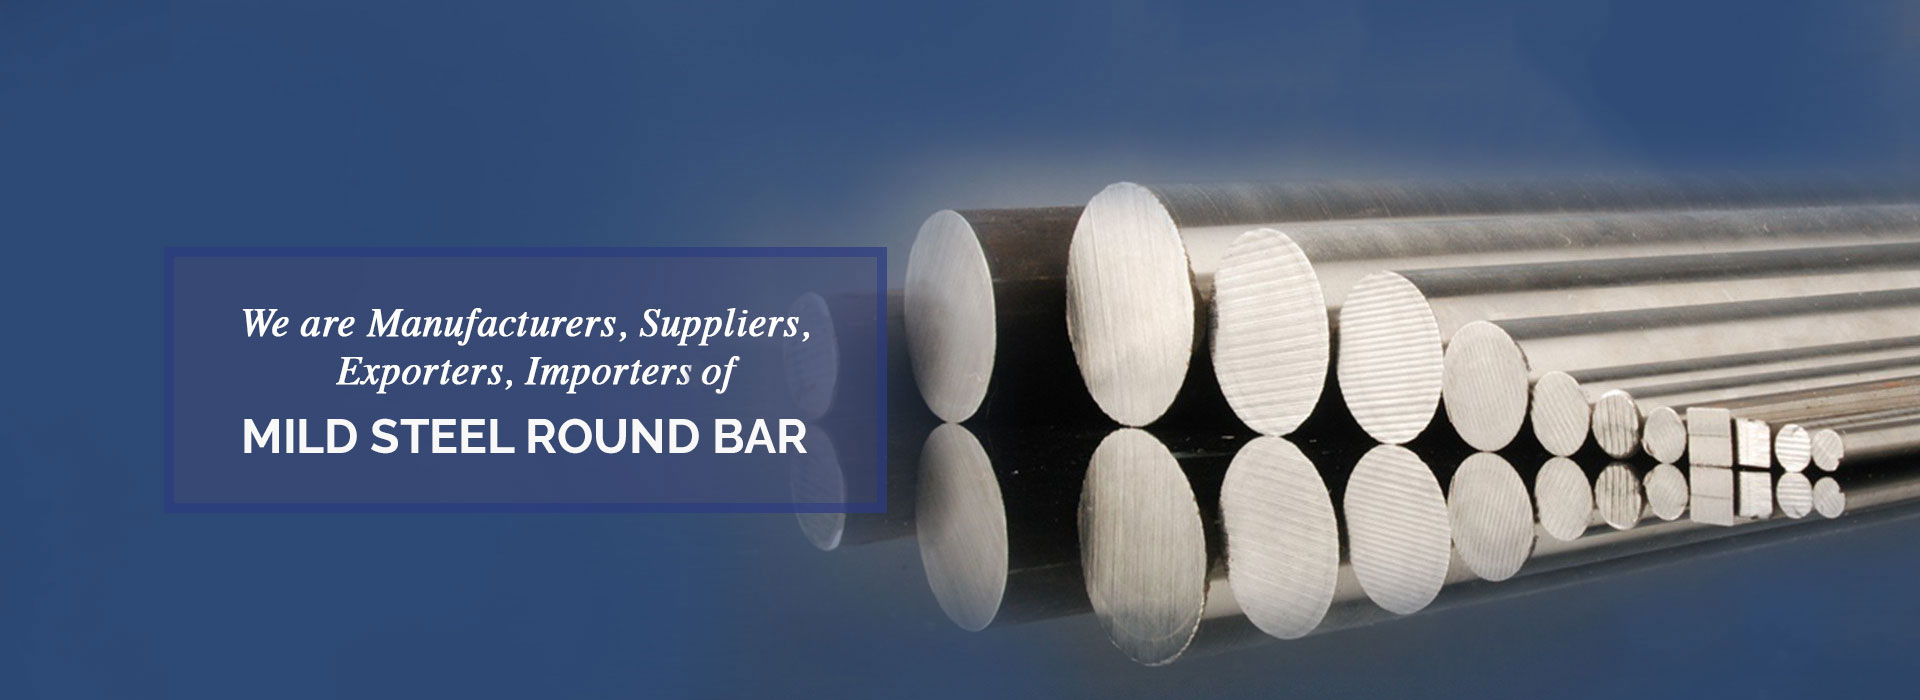 Mild Steel Round Bar Manufacturers in Europe